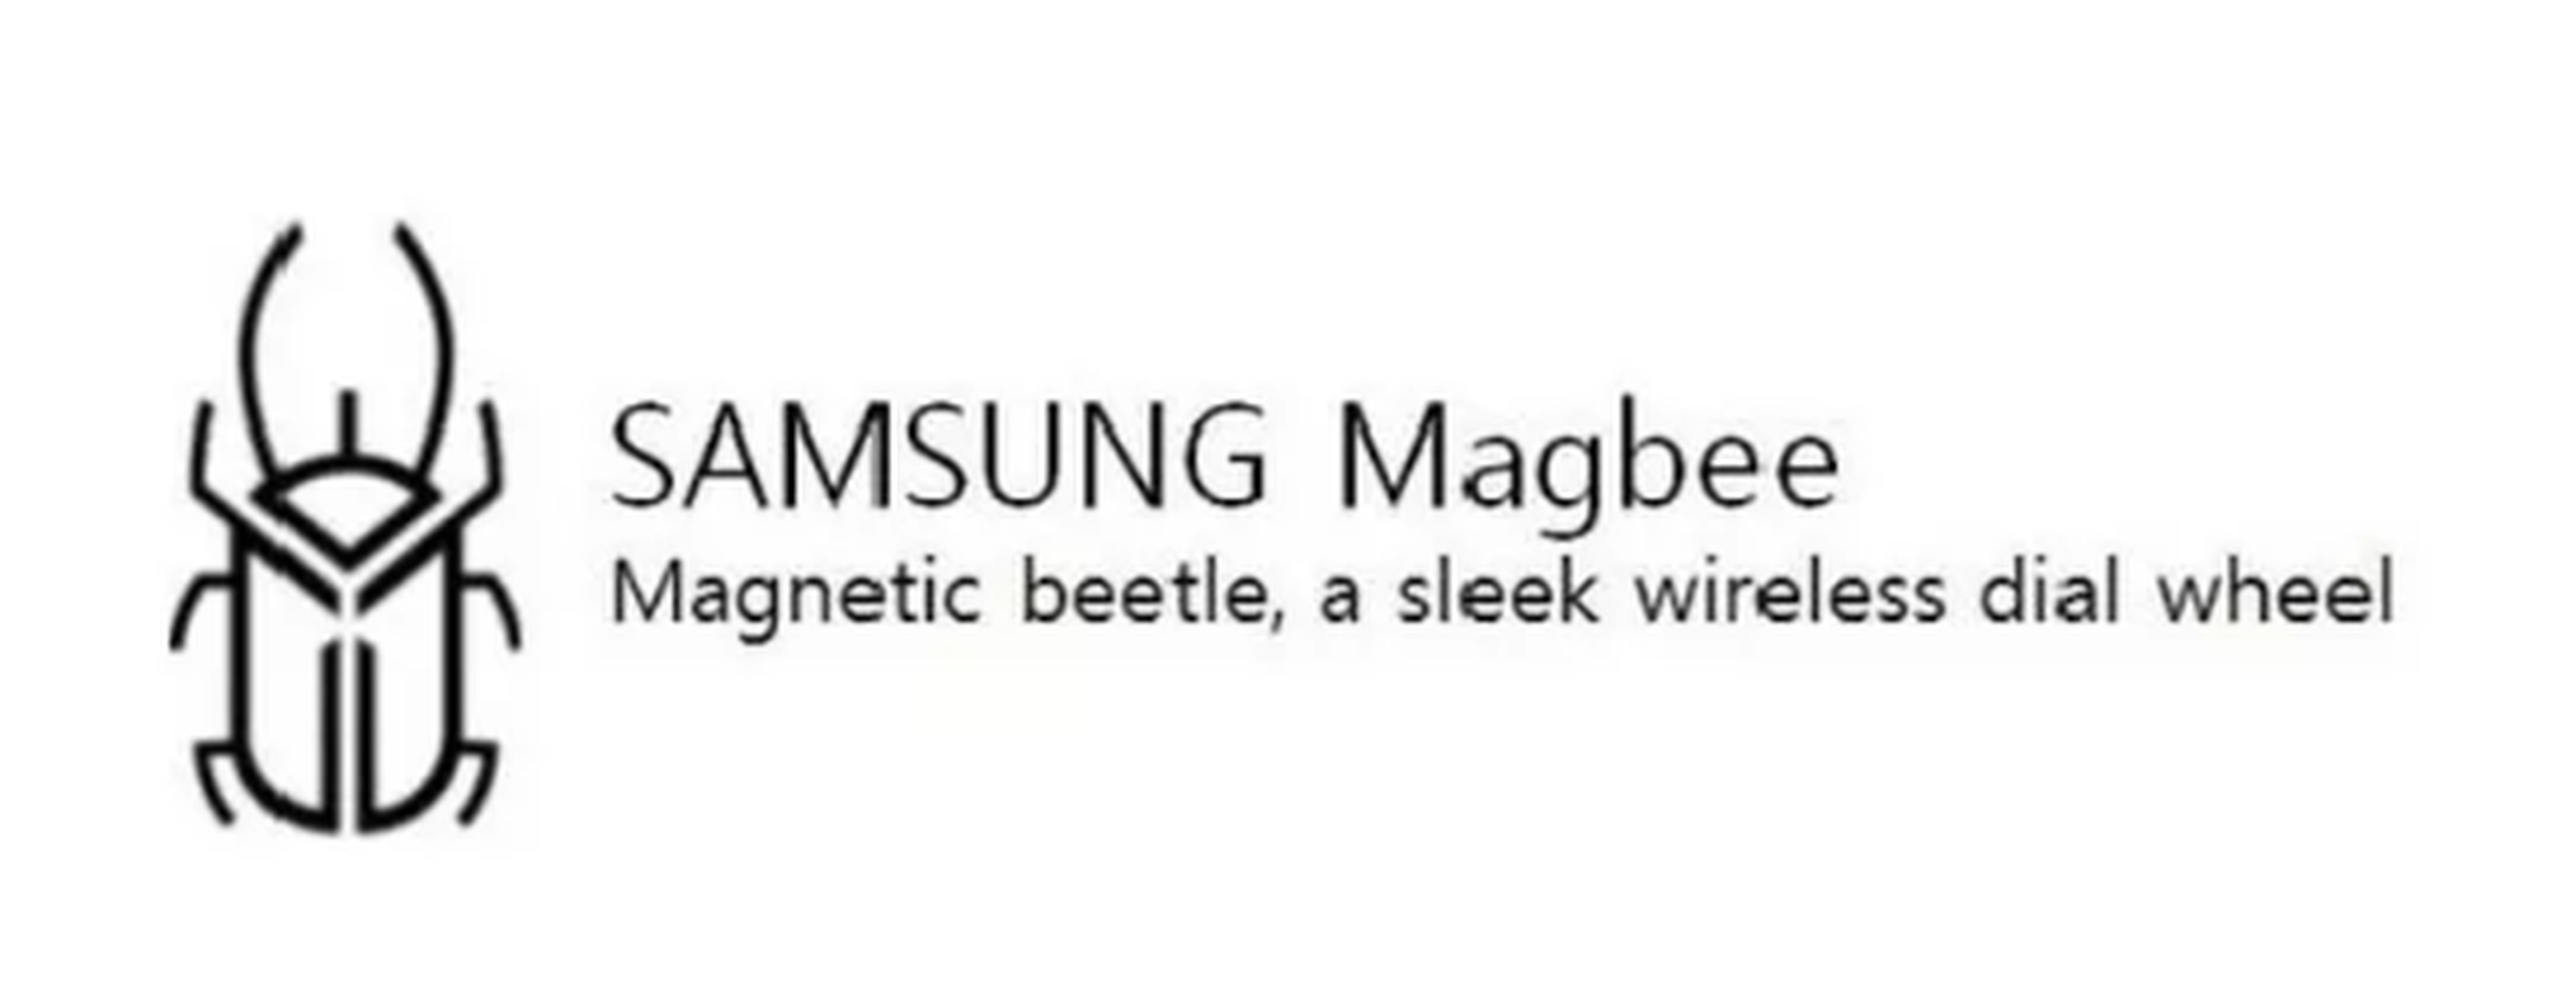 Samsung Magbee